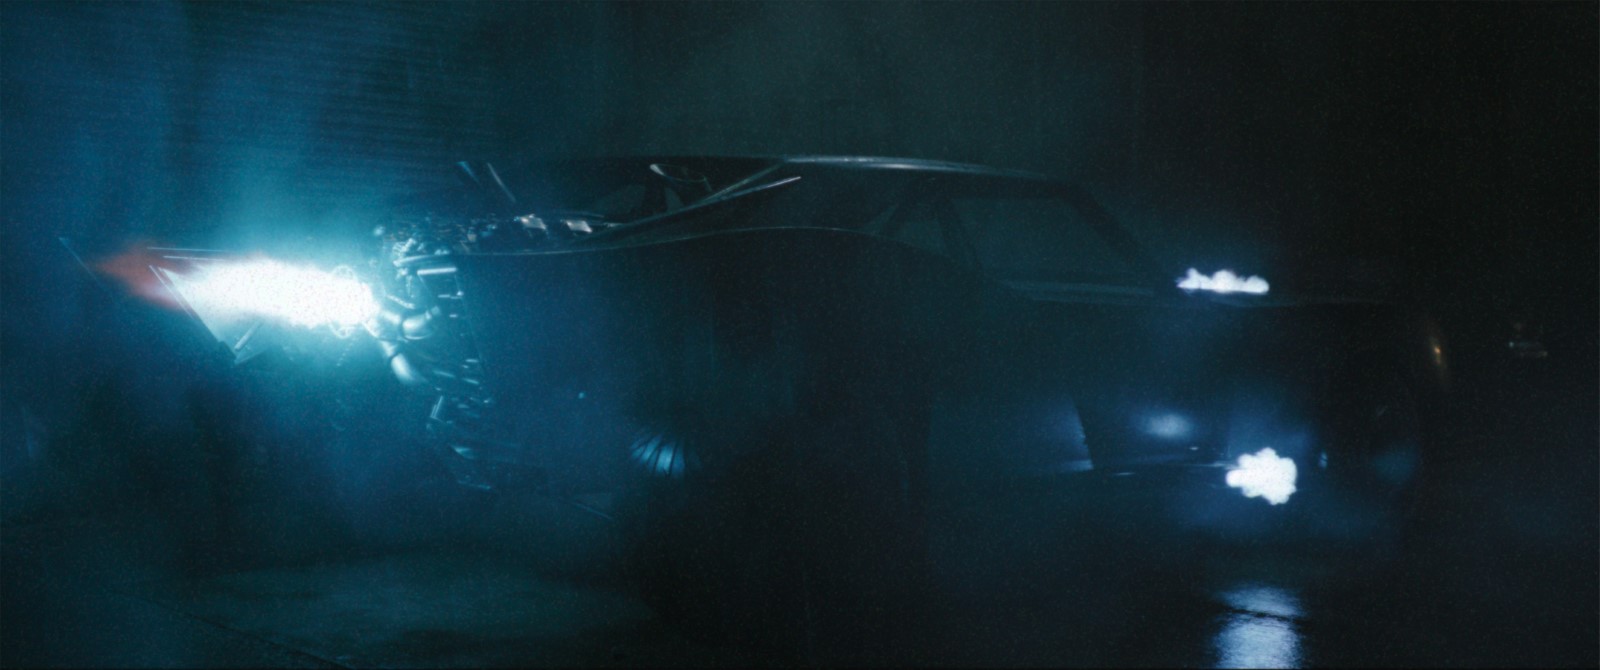 Szenenbild 11 vom Film The Batman